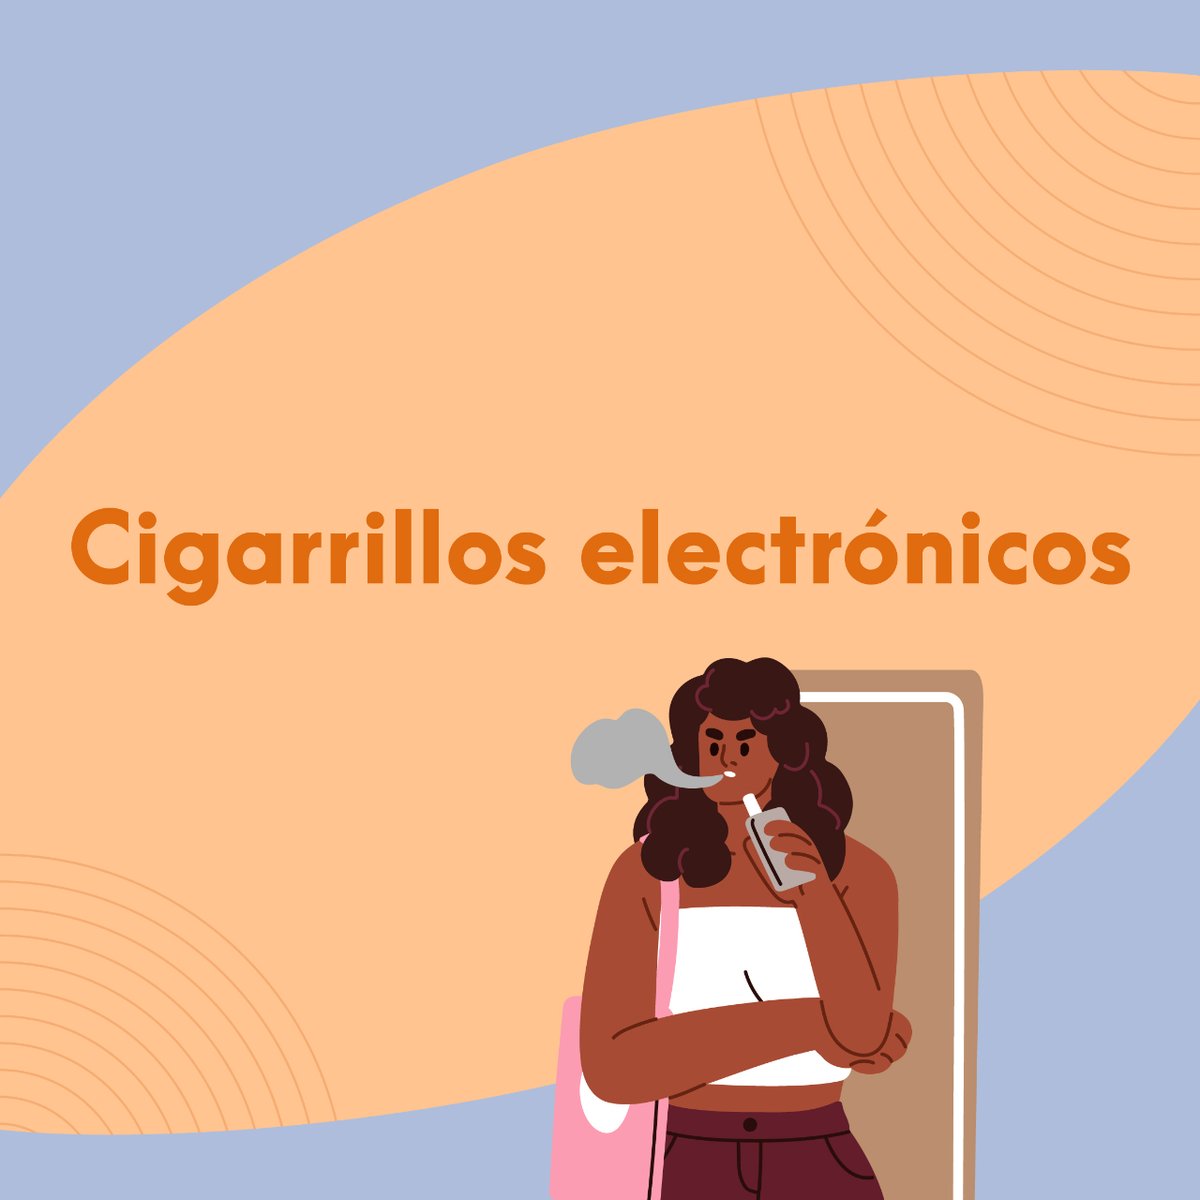 #CigarrillosElectrónicos 🔸 La nicotina de los cigarrillos electrónicos es adictiva y puede perjudicar el desarrollo del cerebro. 🔸 En algunos casos, han explotado y provocado quemaduras o incendios. 🔗 Más datos sobre cigarrillos electrónicos aquí 👉 bit.ly/4dkQL7p